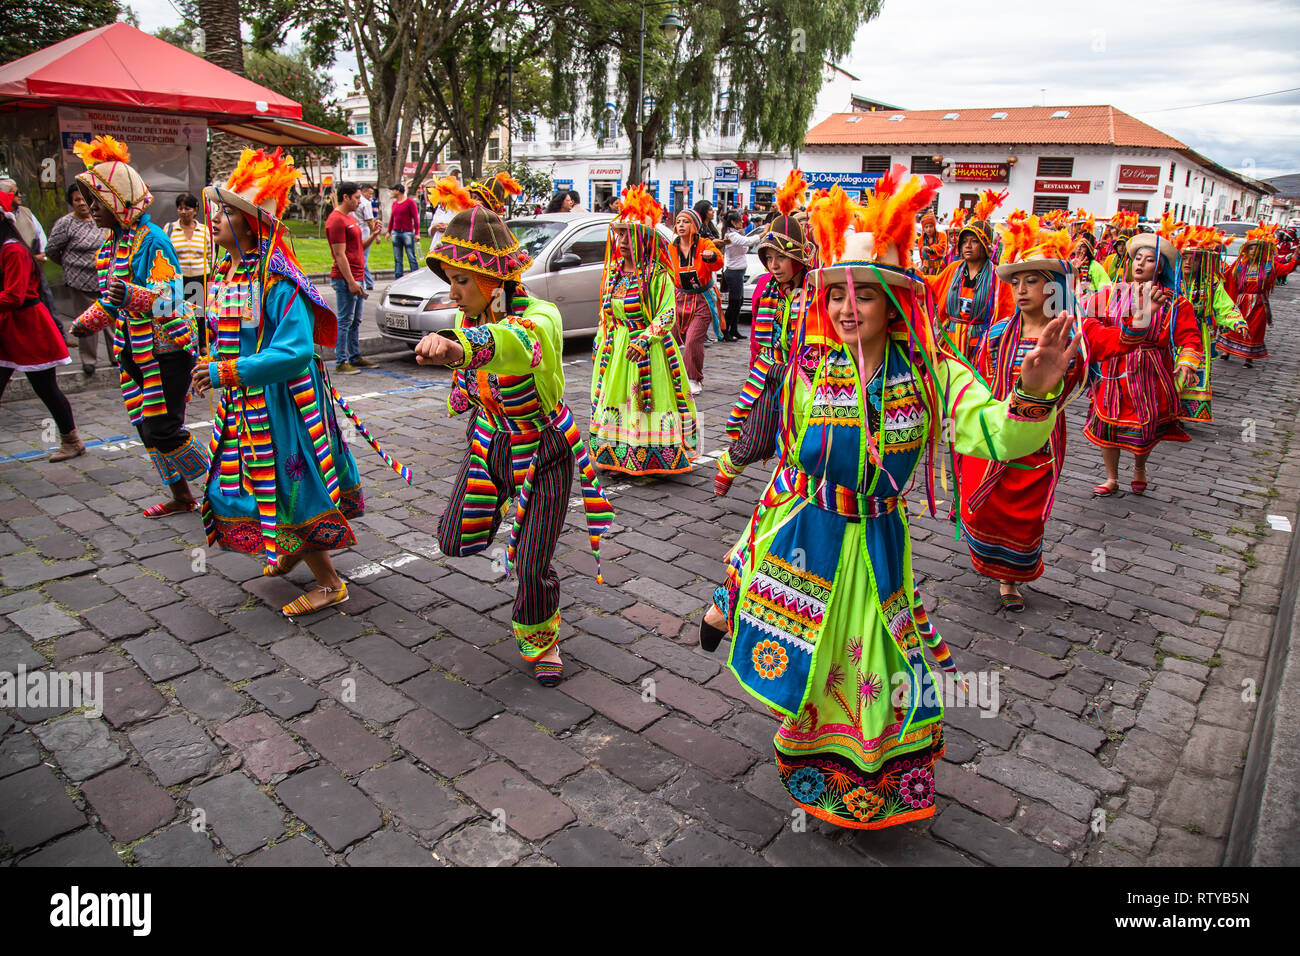 Ibarra, Equateur, le 1er janvier 2019 : un groupe de danseurs de célébrer la nouvelle année avec des costumes traditionnels et des danses de la highlands équatorienne Banque D'Images